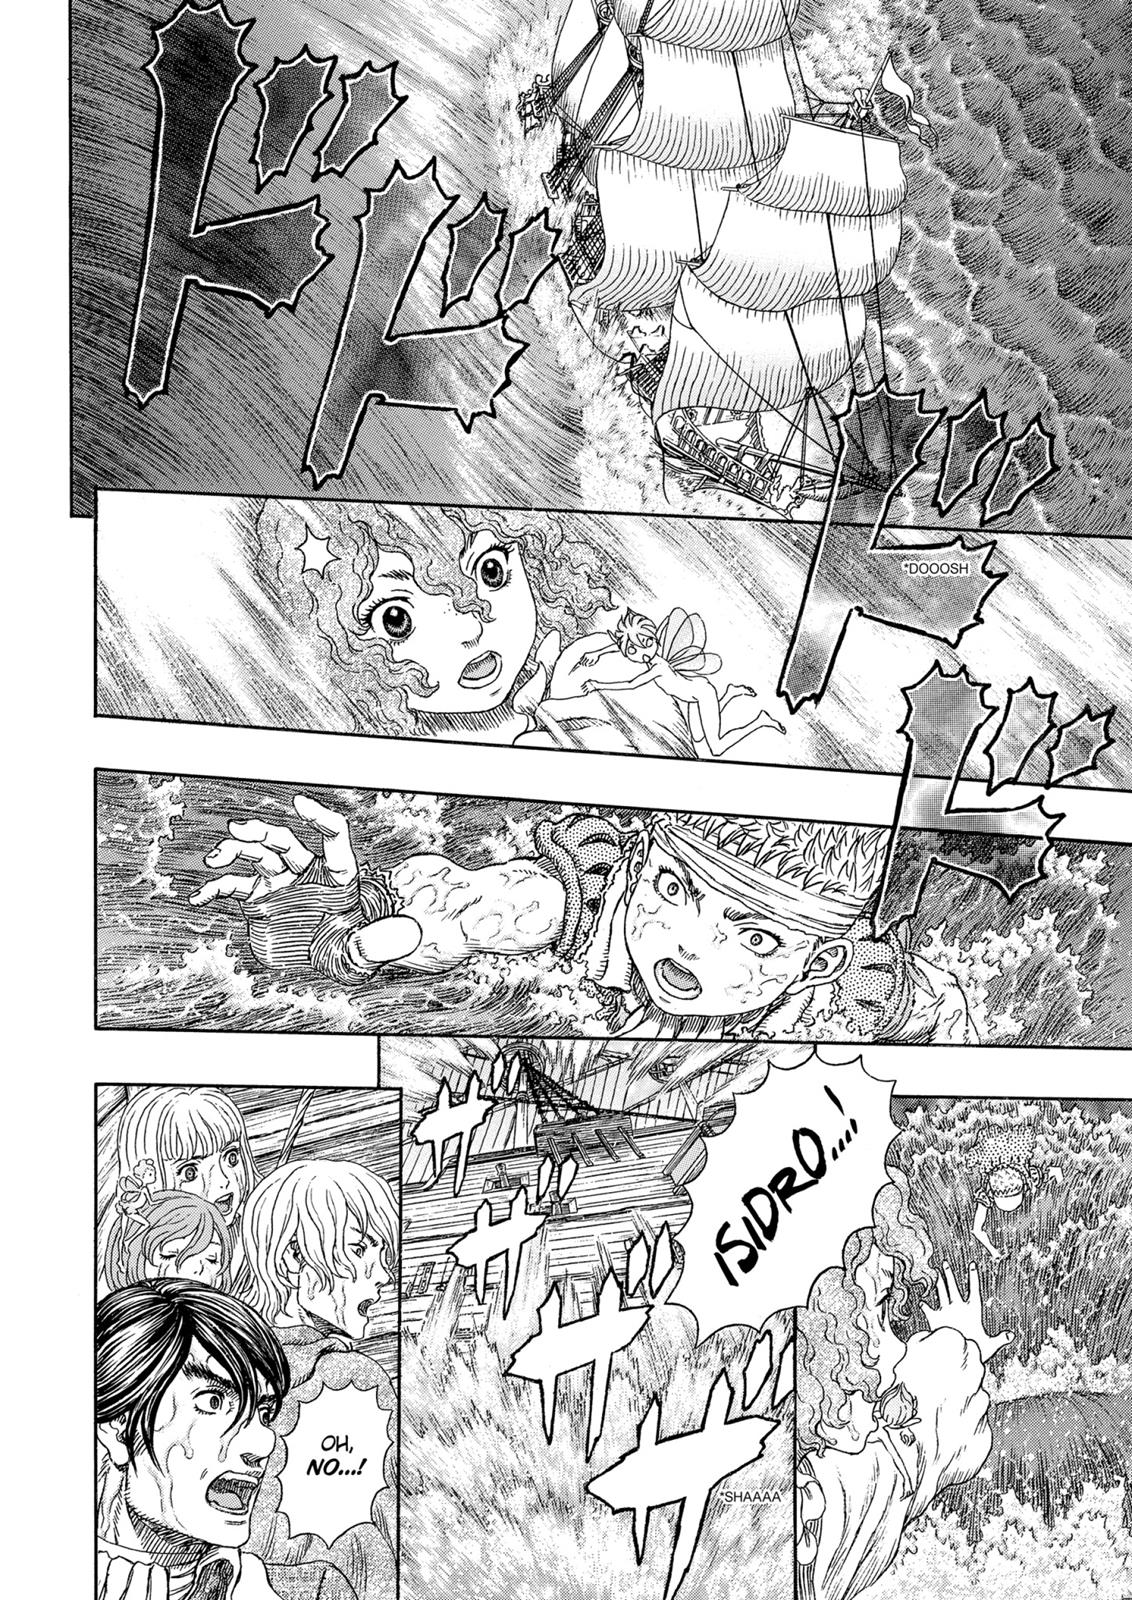 Berserk Manga Chapter 323 image 11